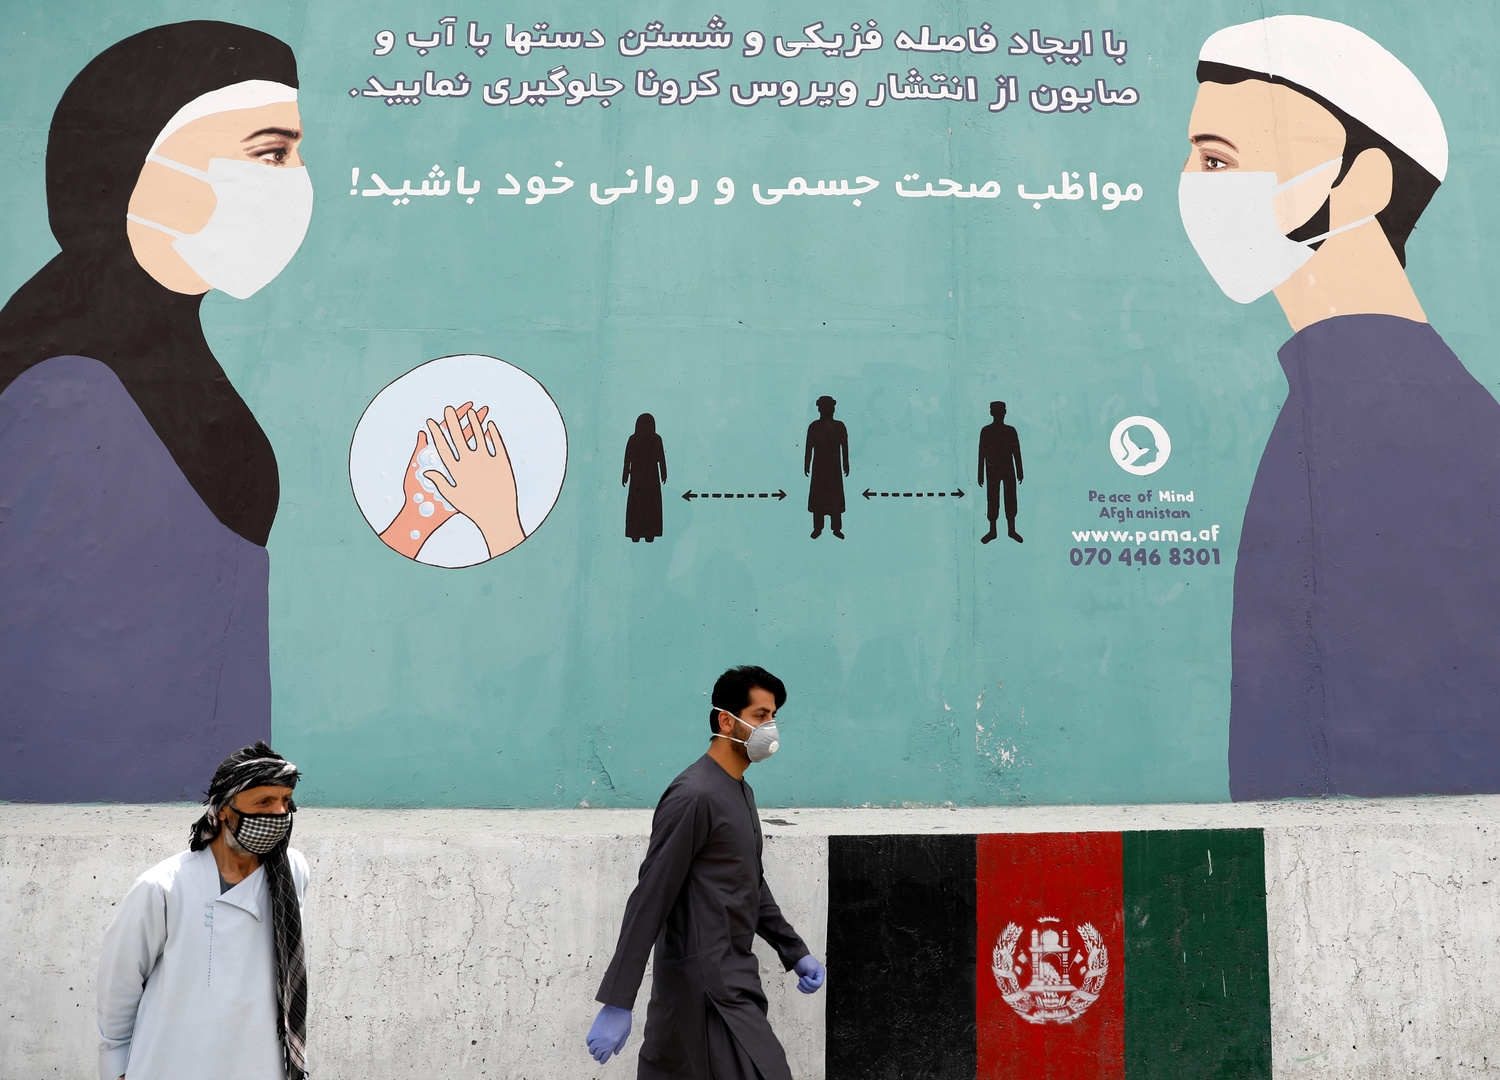 إصابة وزير الصحة الأفغاني بفيروس كورونا ووضعه قيد الحجر الصحي